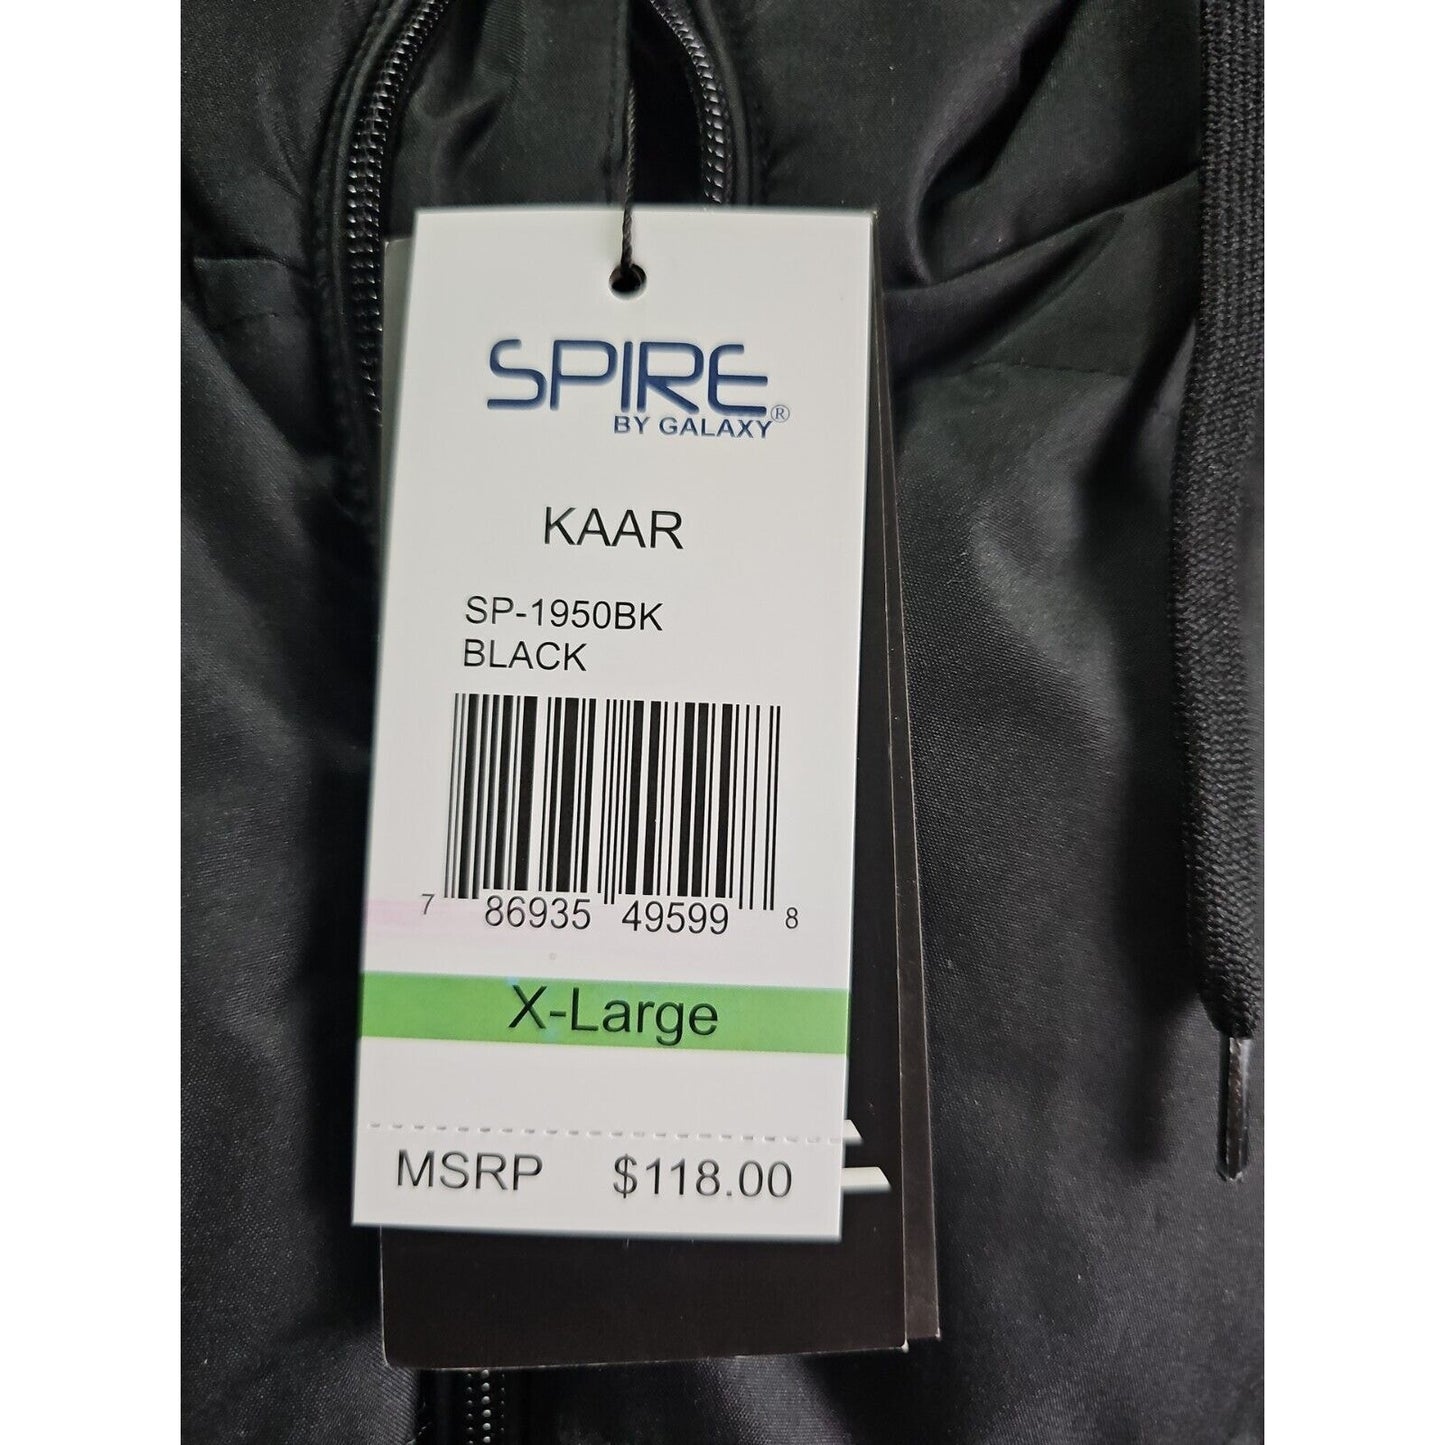 Spire by Galaxy Kaar Black Waterproof Coat XL